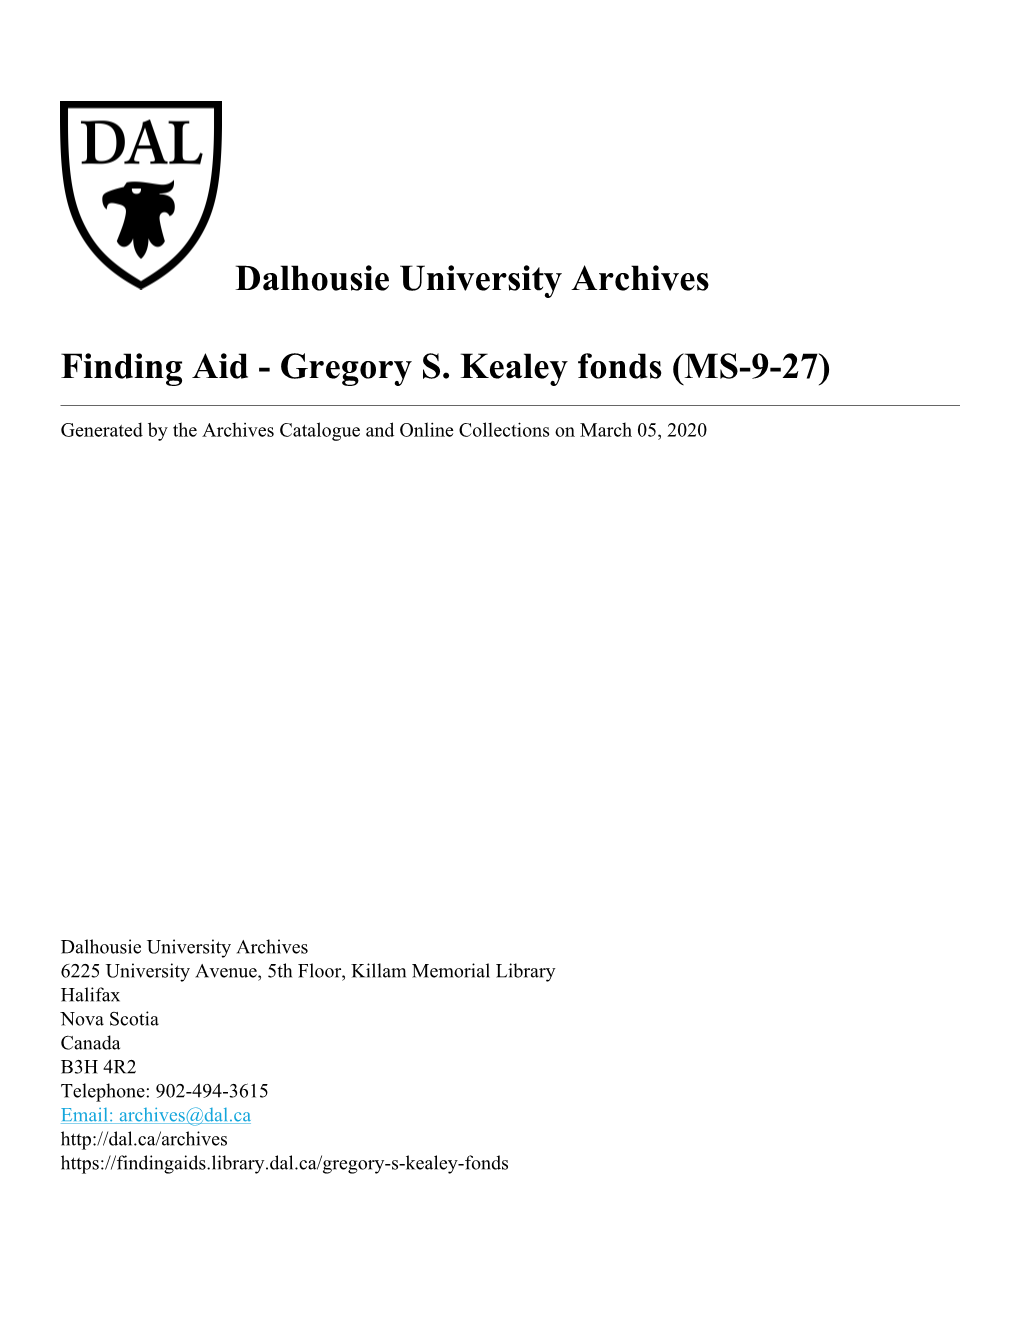 Gregory S. Kealey Fonds (MS-9-27)